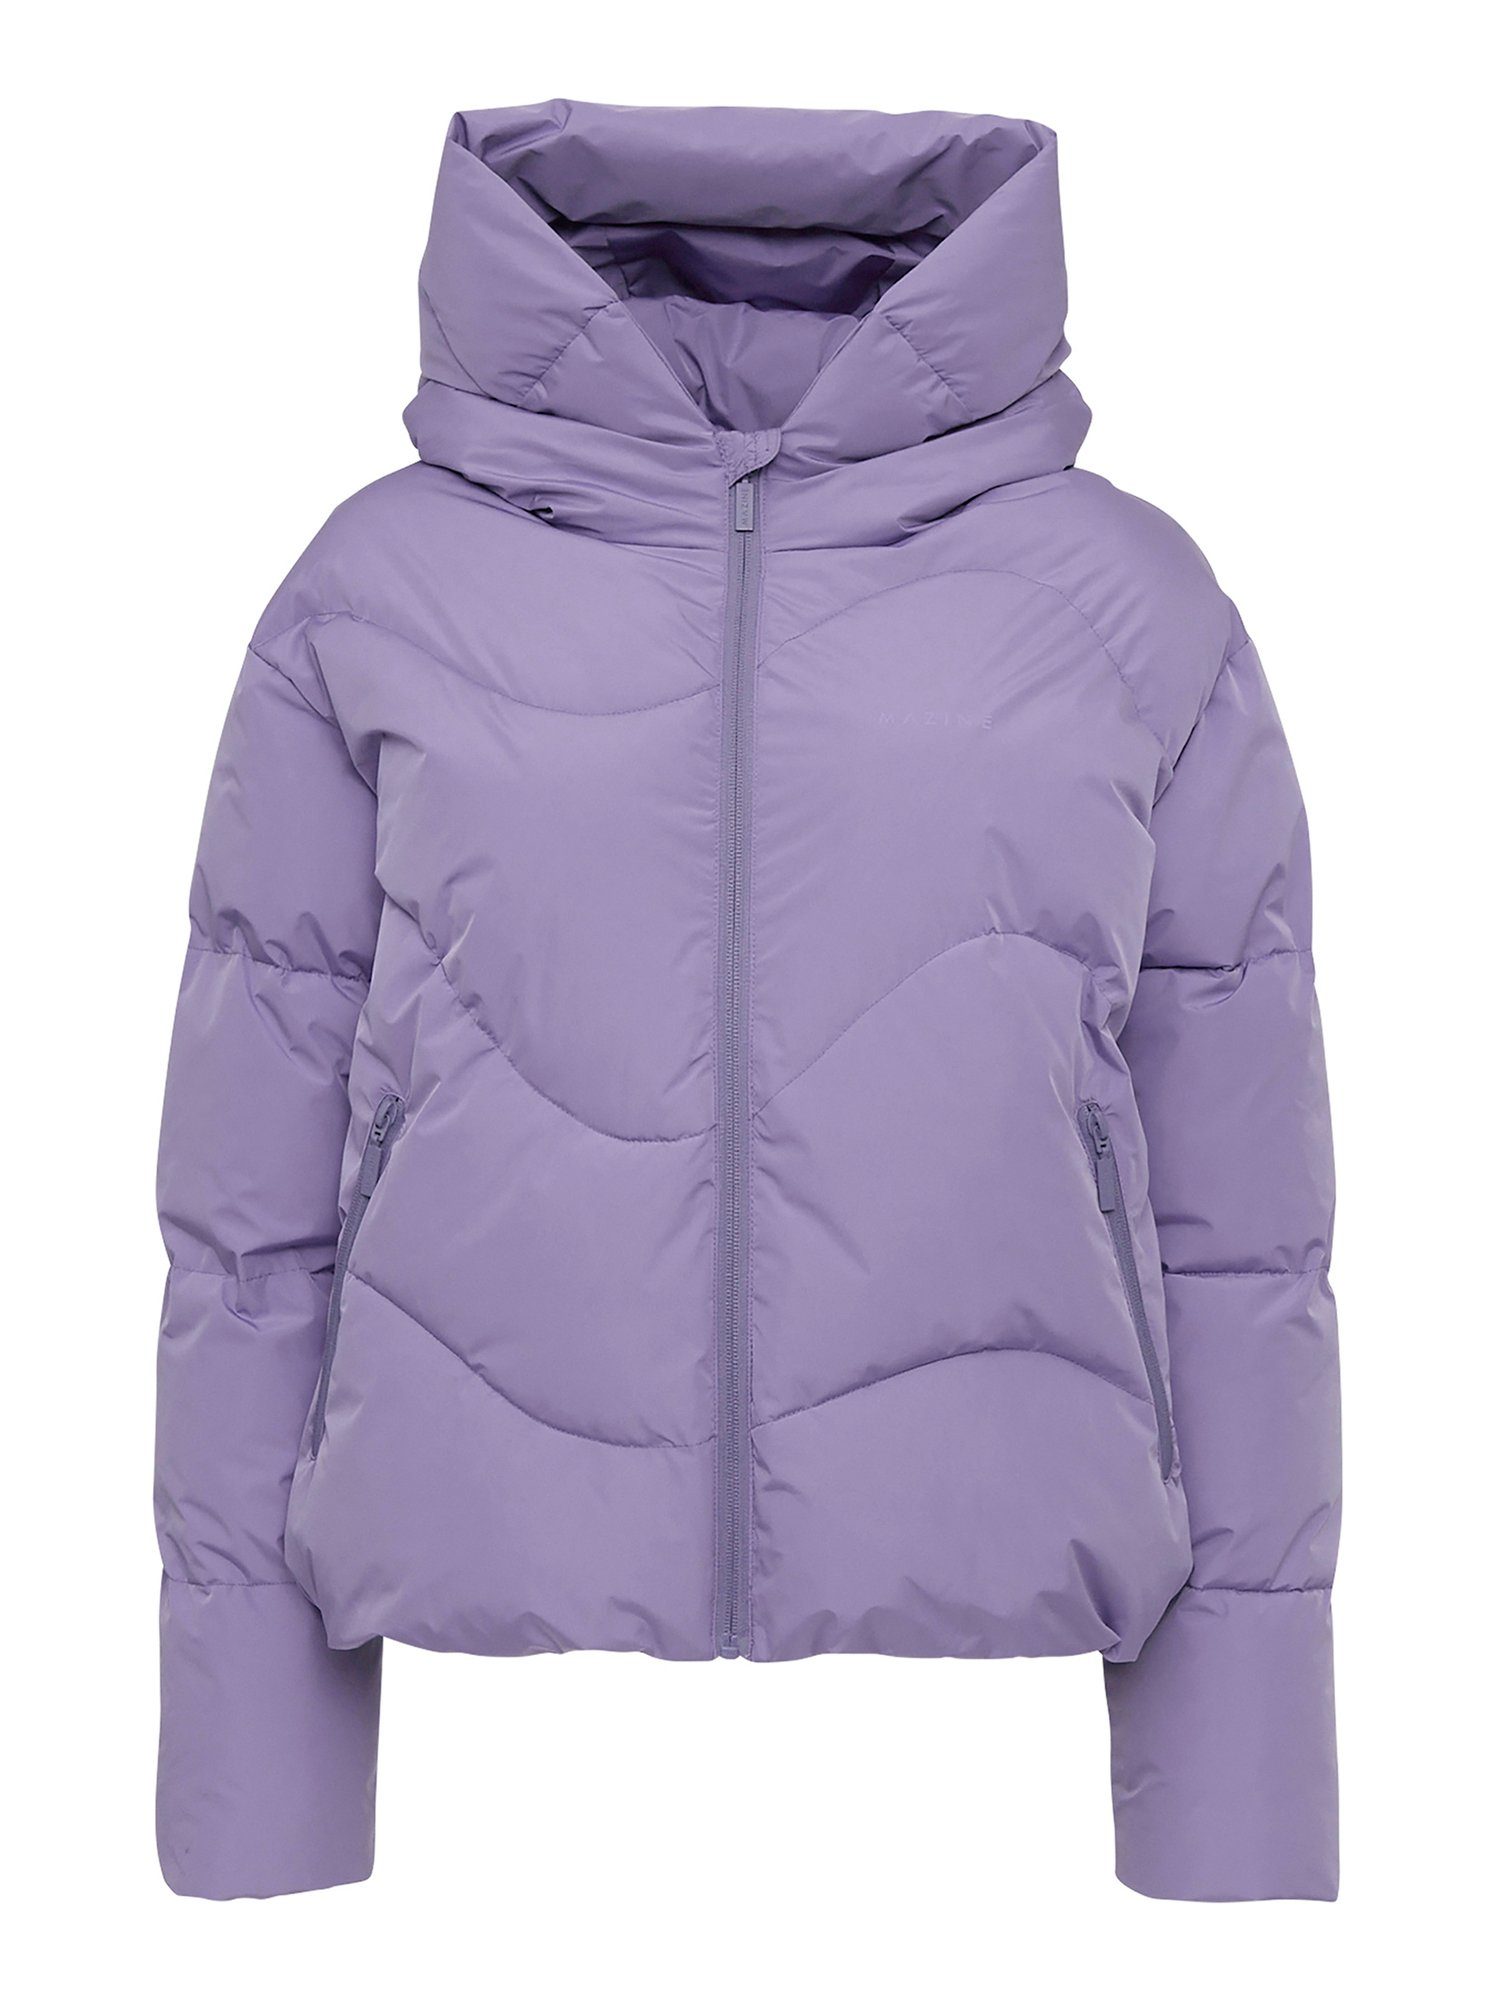 MAZINE Winterjacke Dana Puffer Jacket warm gefüttert purple haze